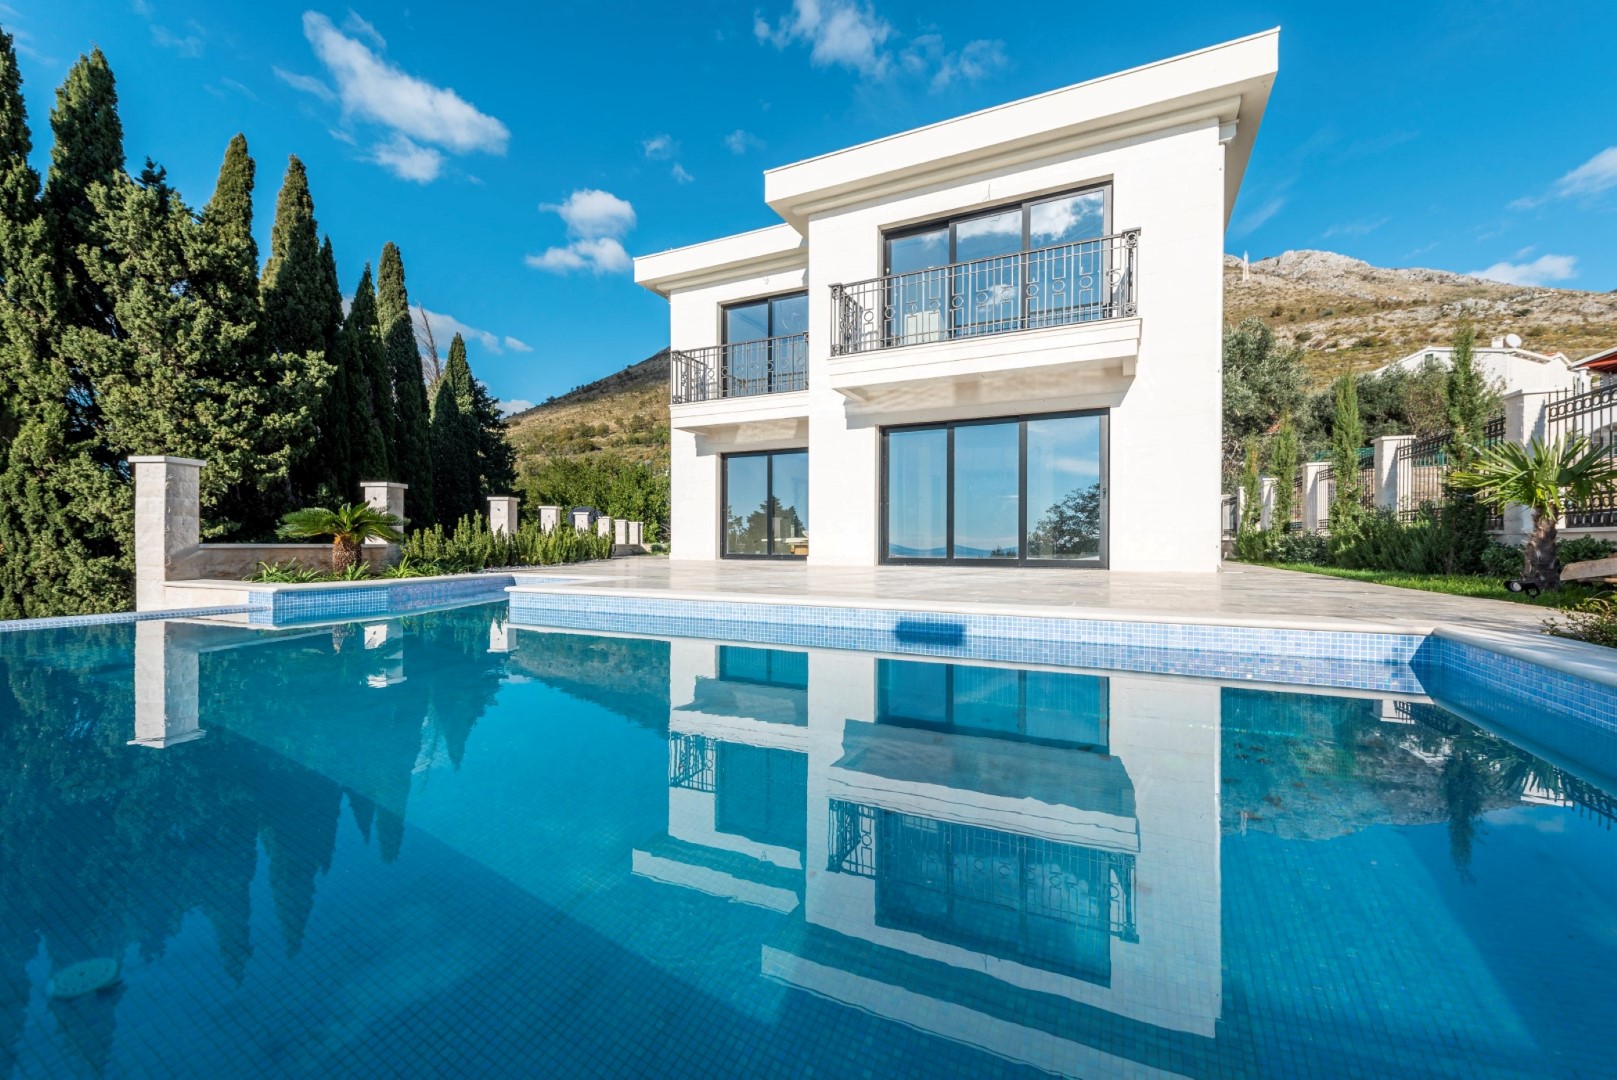 SOLD:     Budva, Perazica Do – new villa with a pool and sea views